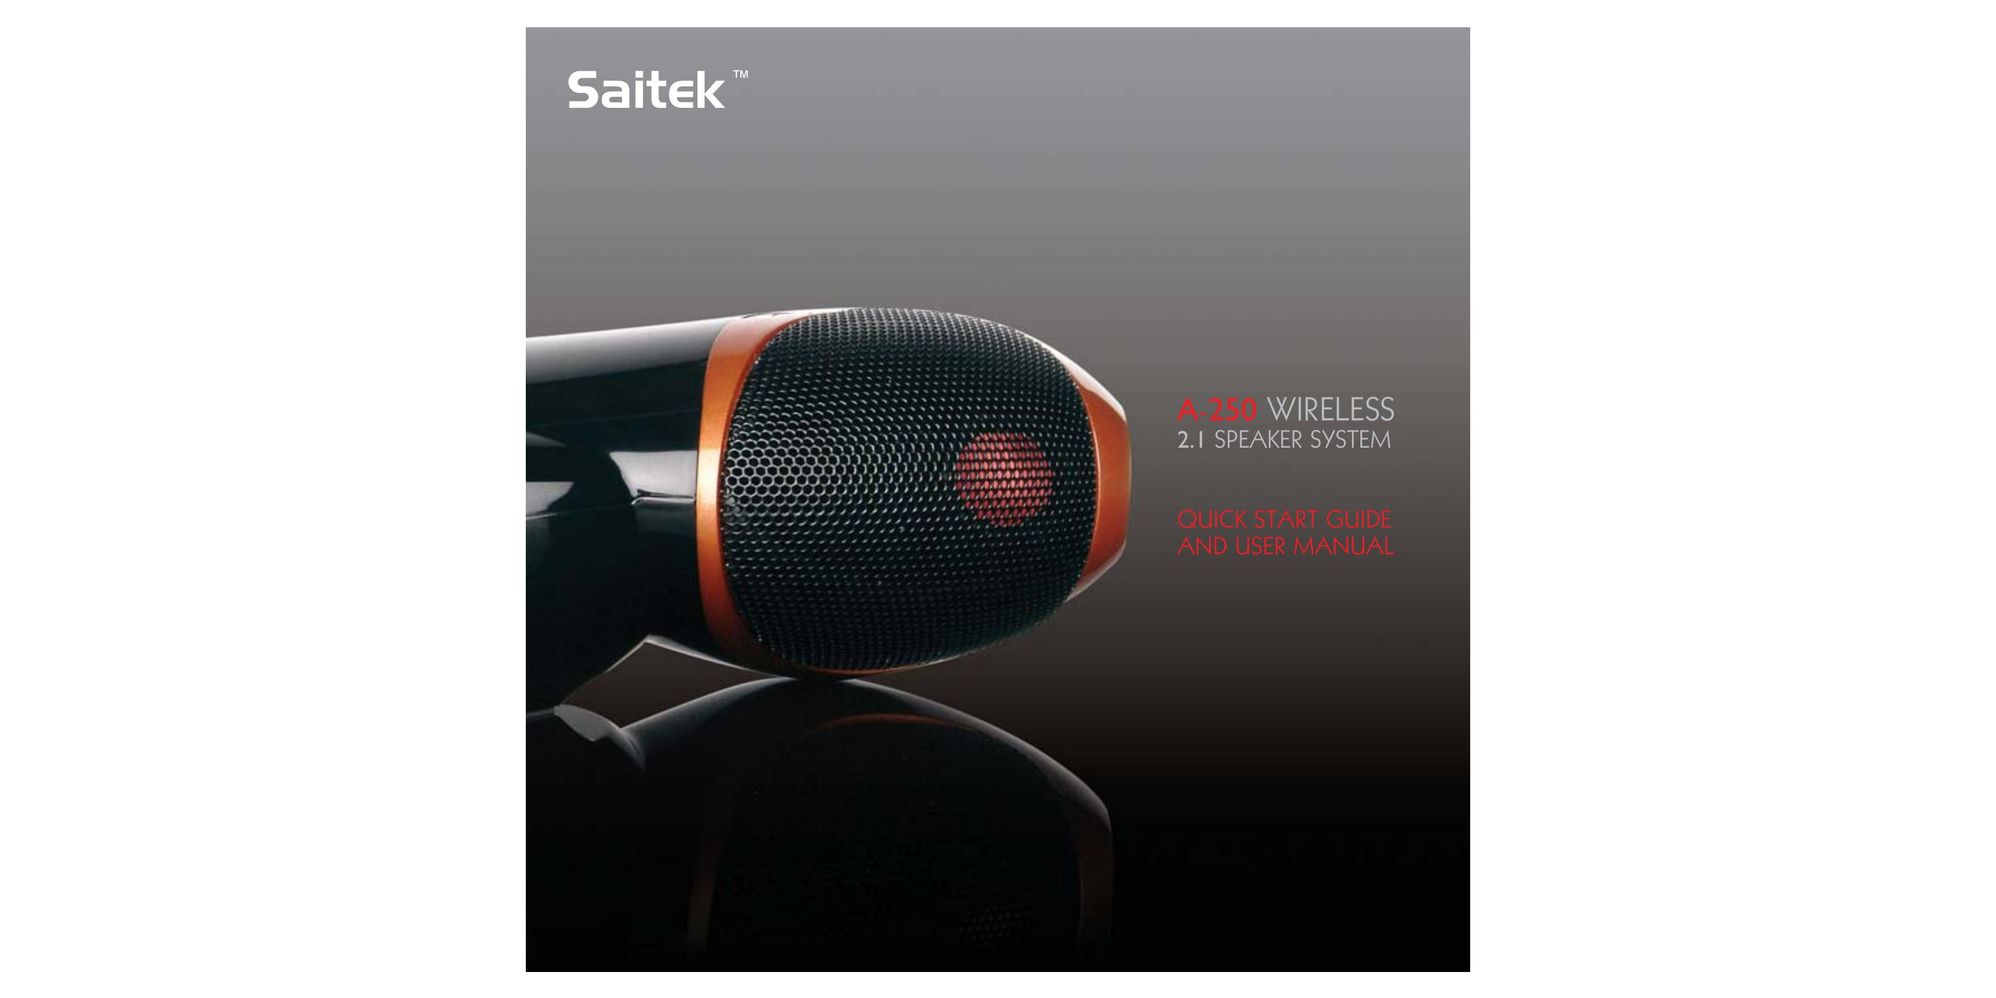 Saitek A-250 Speaker User Manual